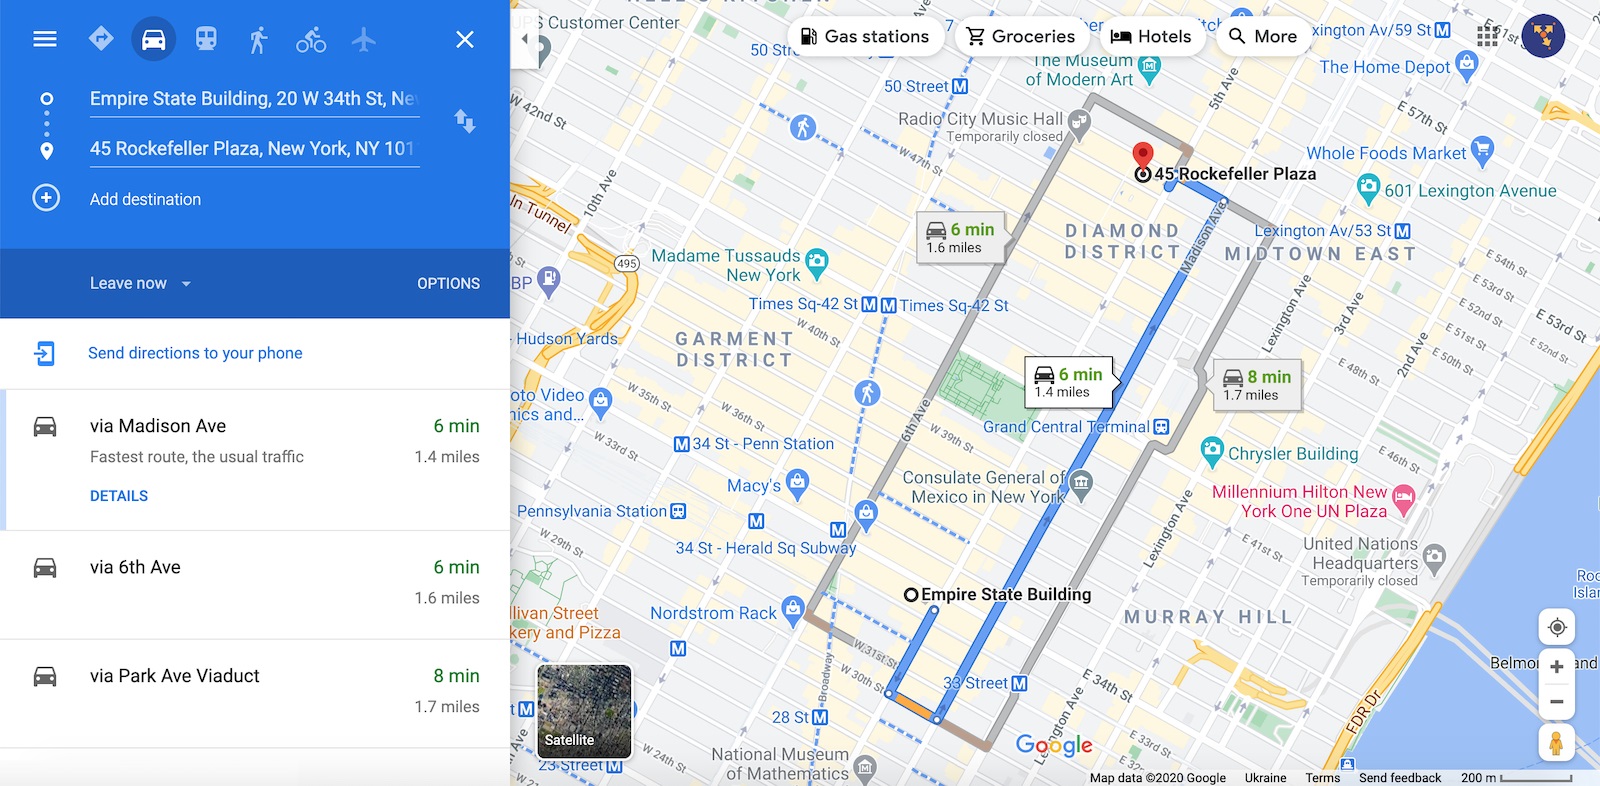 Memasukkan alamat destinasi untuk laluan multi berhenti di perancang laluan peta google